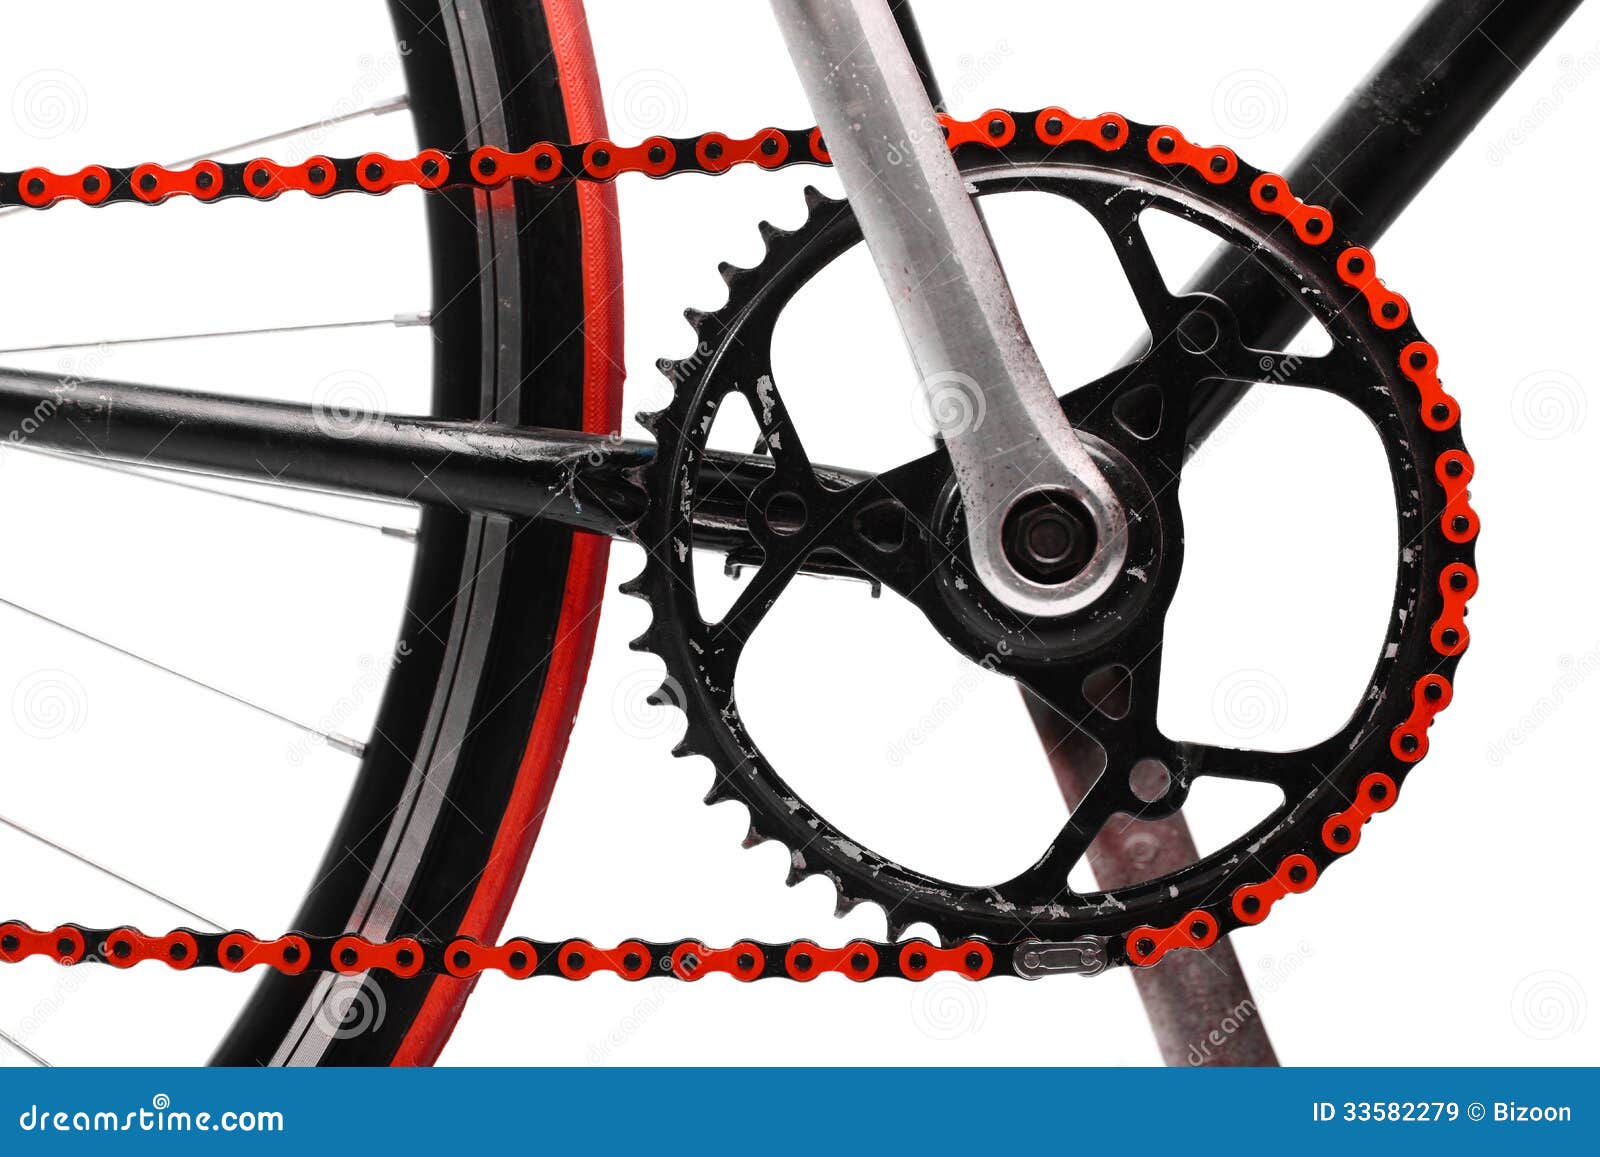 Велосипед с цепью на переднем колесе. Красная цепь для велосипеда. Цепь велосипедная цветная. Цепь для велосипеда крашеная. Окрашенной цепью велосипеда.